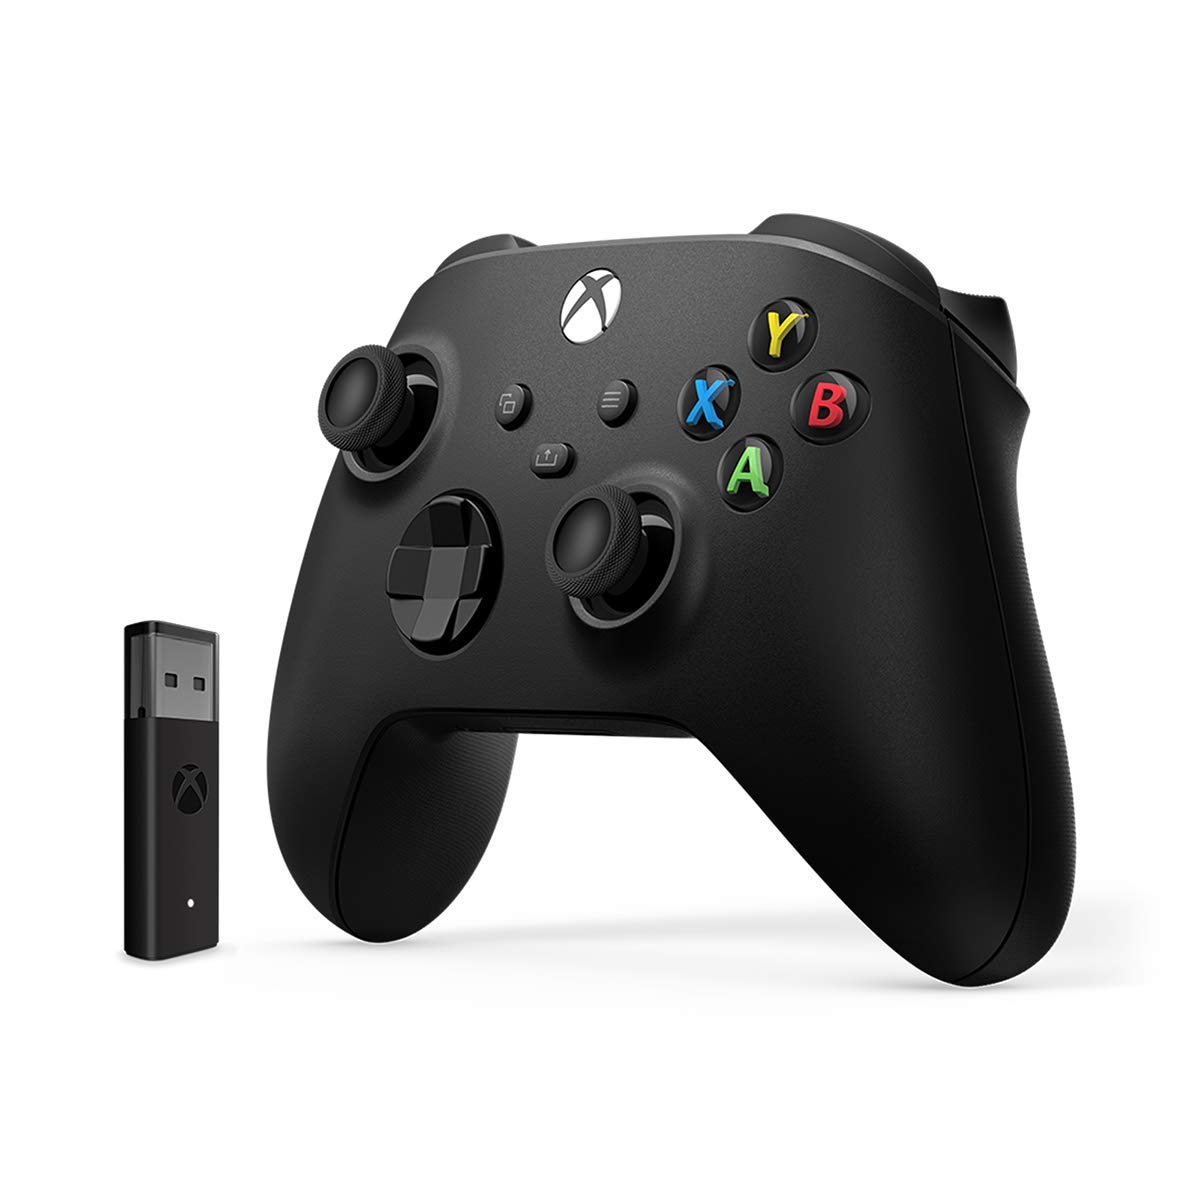 Скриншоты Беспроводной геймпад Xbox Carbon Black [Черный] + адаптер для Windows 10 (1VA-00008) интернет-магазин Омегагейм